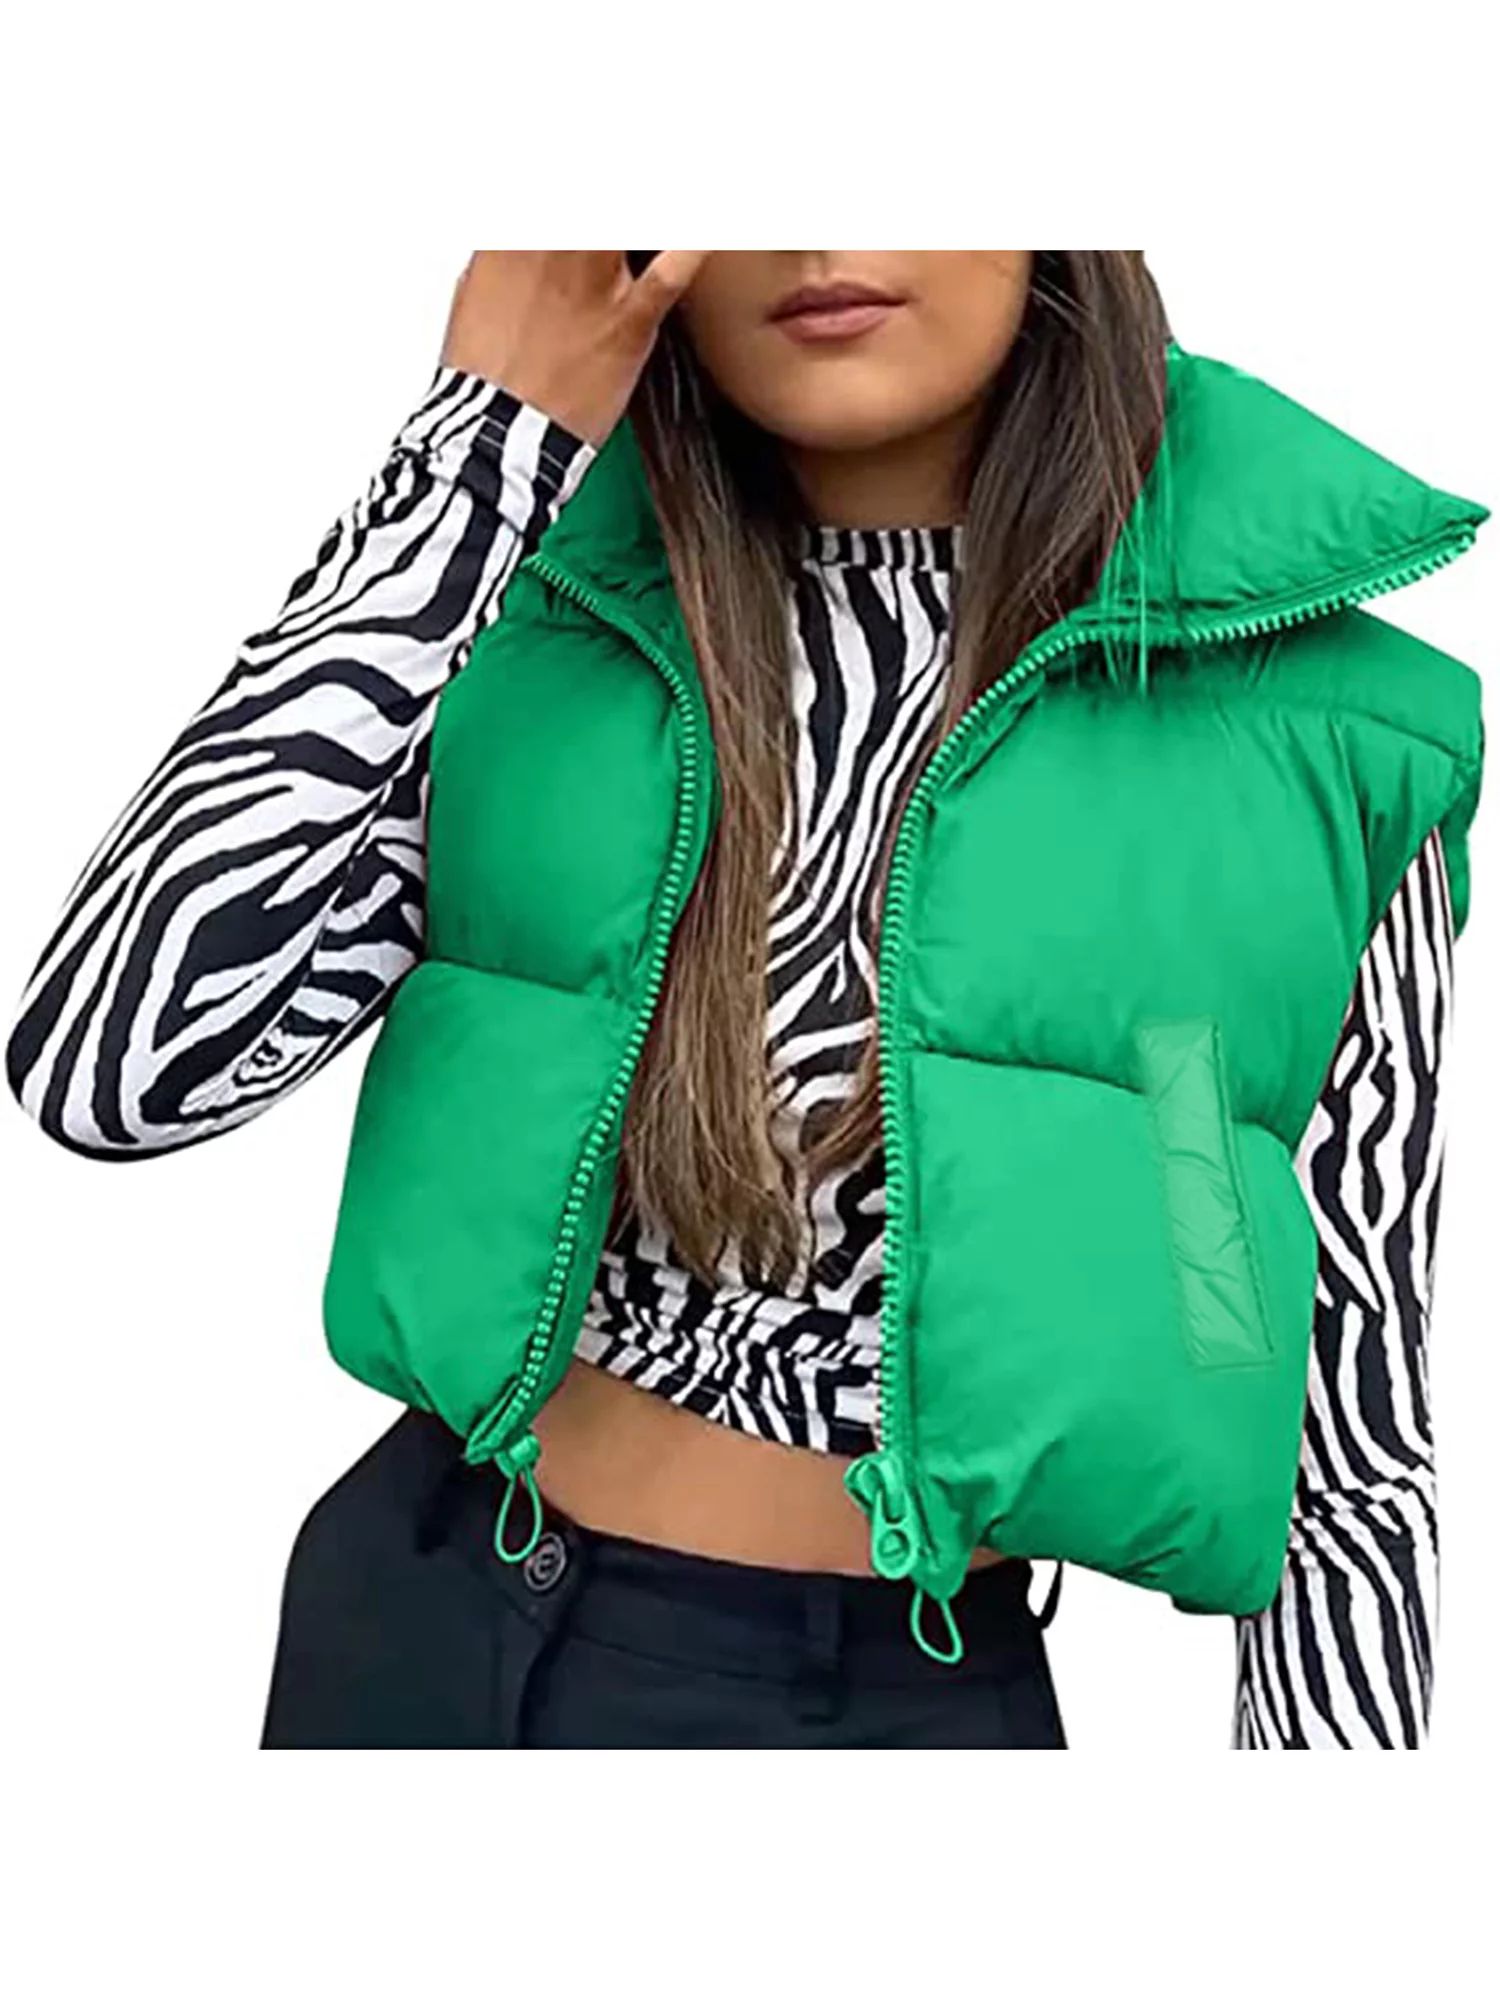 Sunisery Women's Winter Warm Crop Vest Zipper Up Lightweight Sleeveless Waistcoat High Neck Puffe... | Walmart (US)